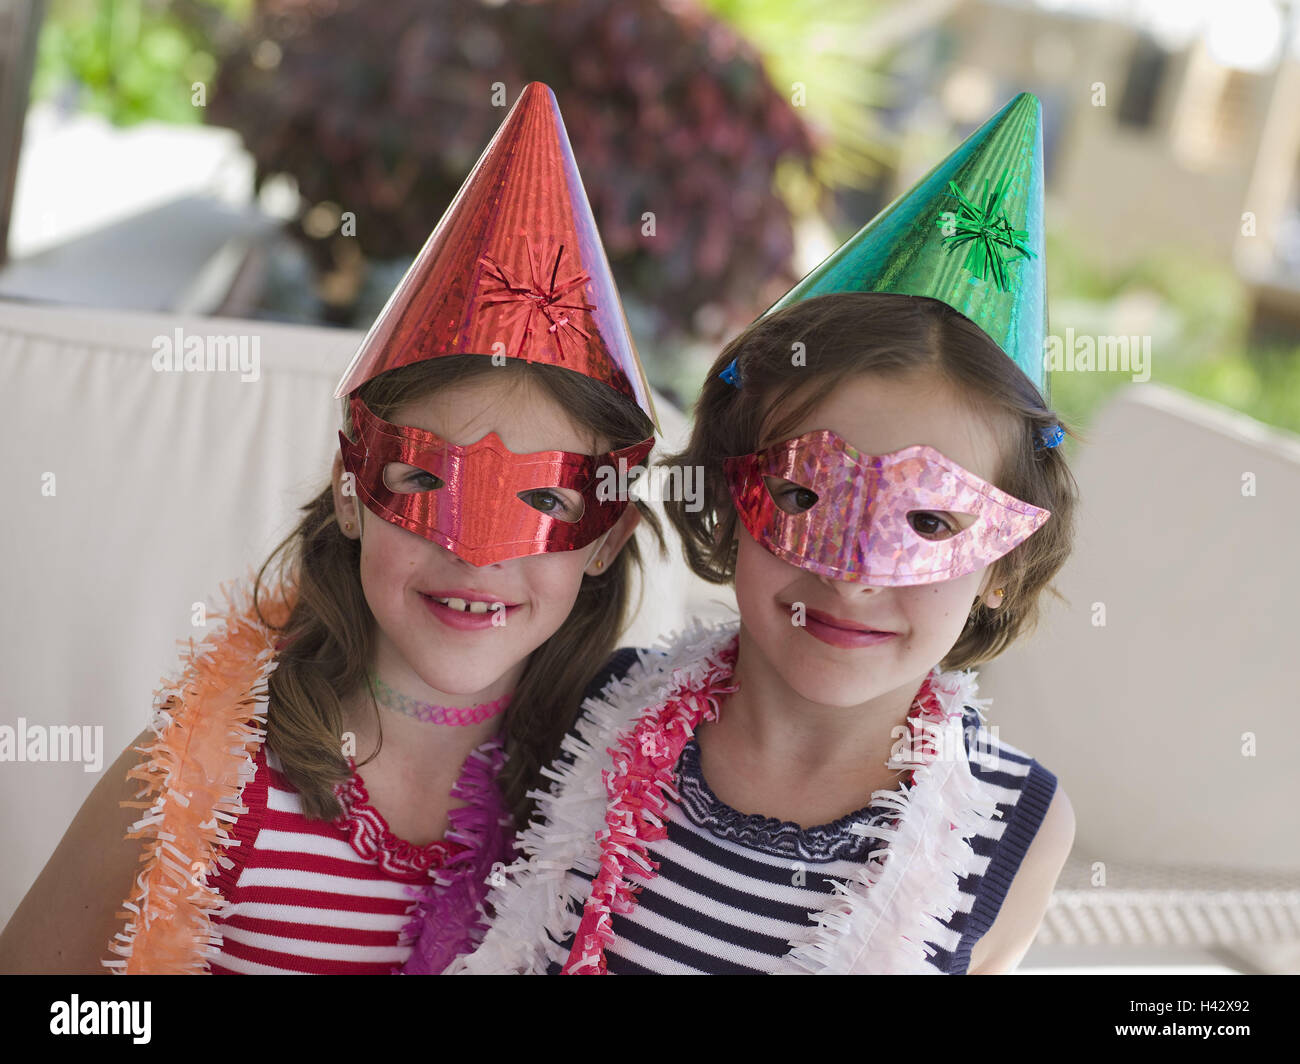 Carnaval, niña, gemelos, de 8 años, trajes de carnaval, retrato, modelo  liberado, fiesta infantil, niños, hermanas, gente, dos, uno al lado del  otro, forro, trajes, gorras, sombreros de papel, sombreros, máscaras,  máscaras